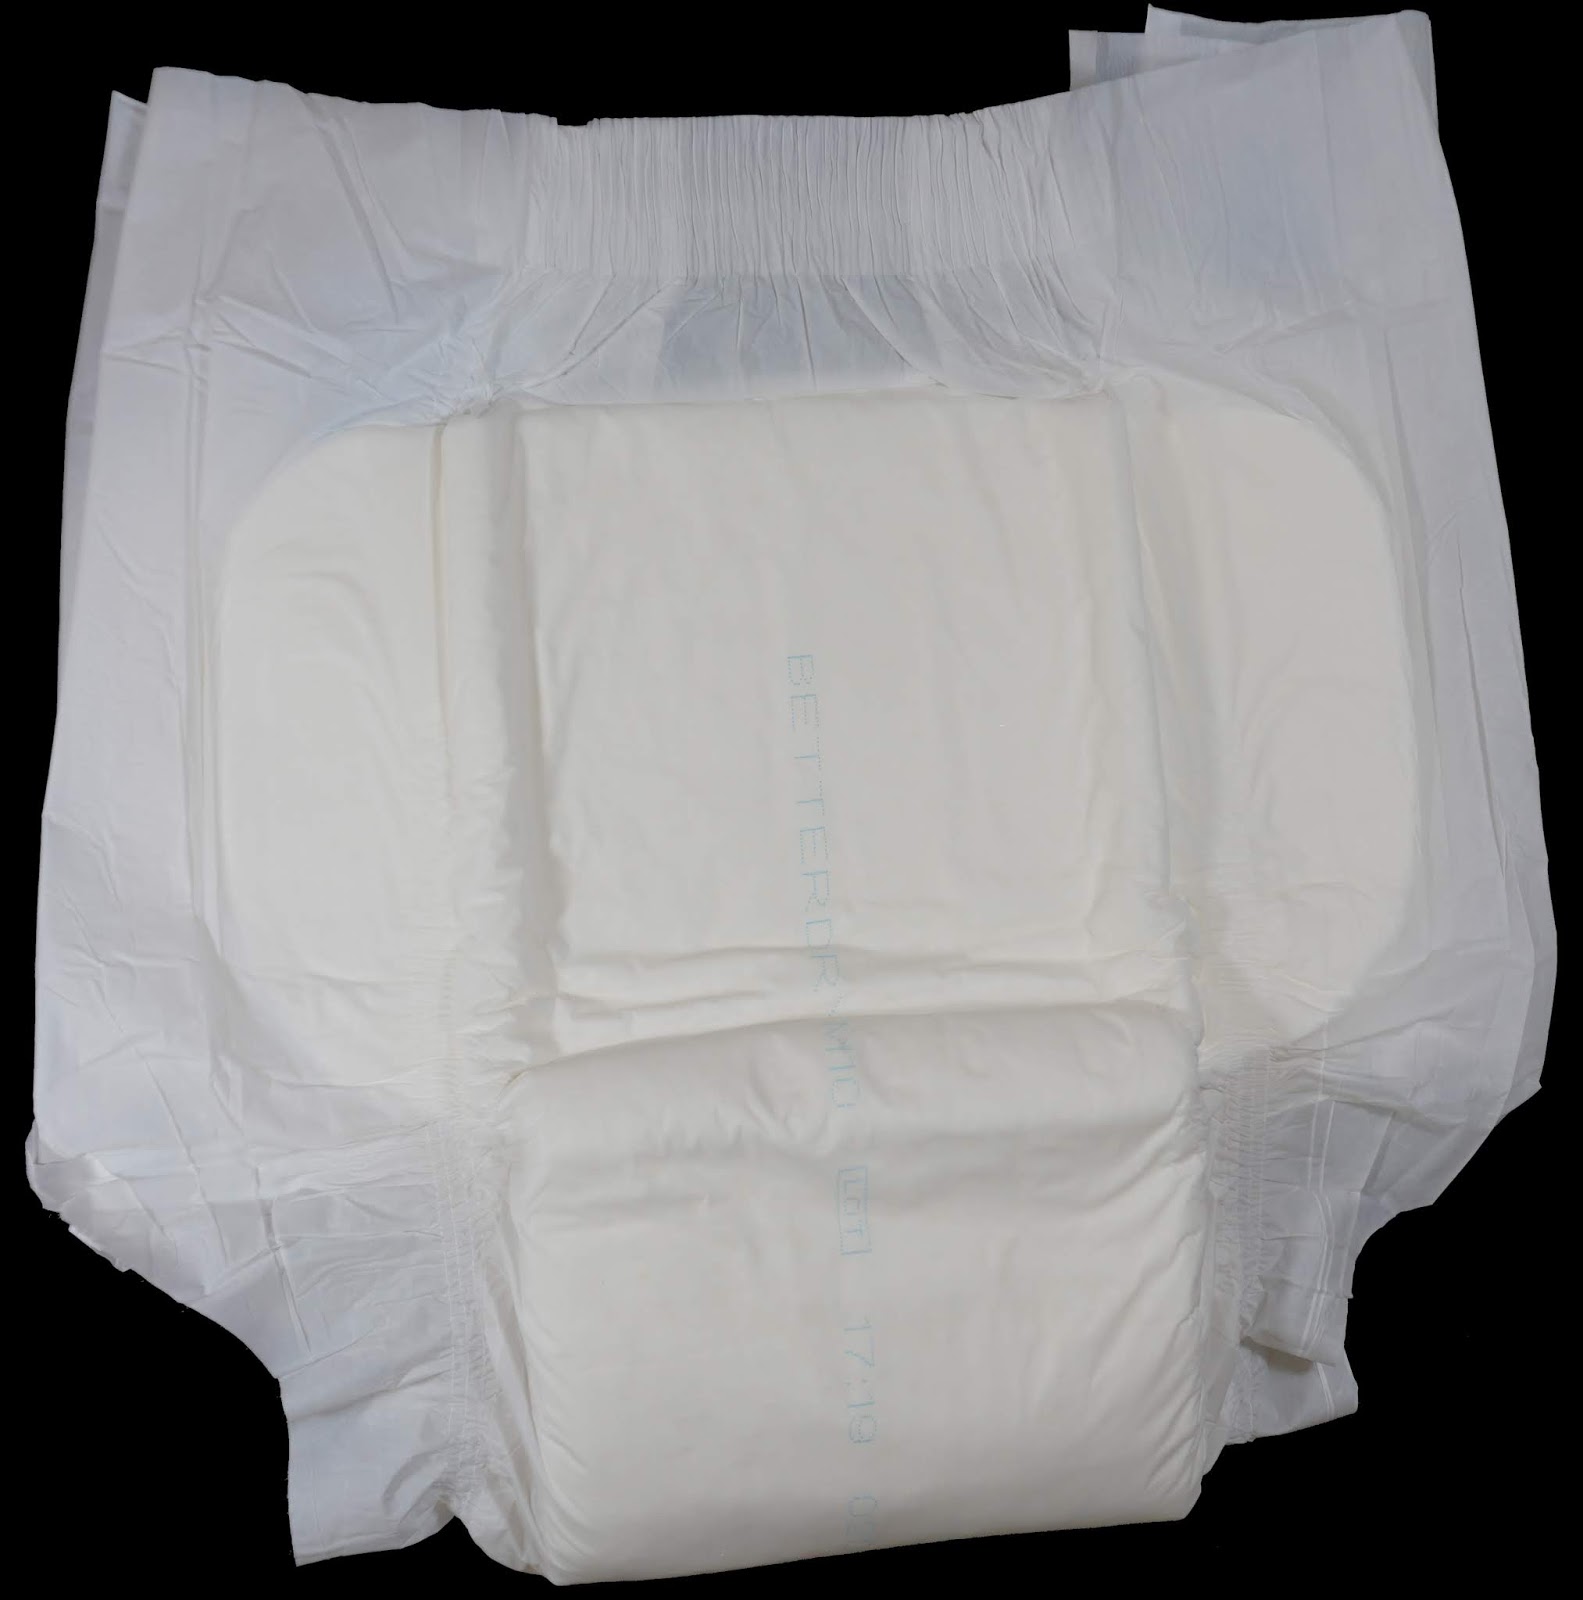 Diaper Metrics: BetterDry M10/Crinklz Adult Diaper Review